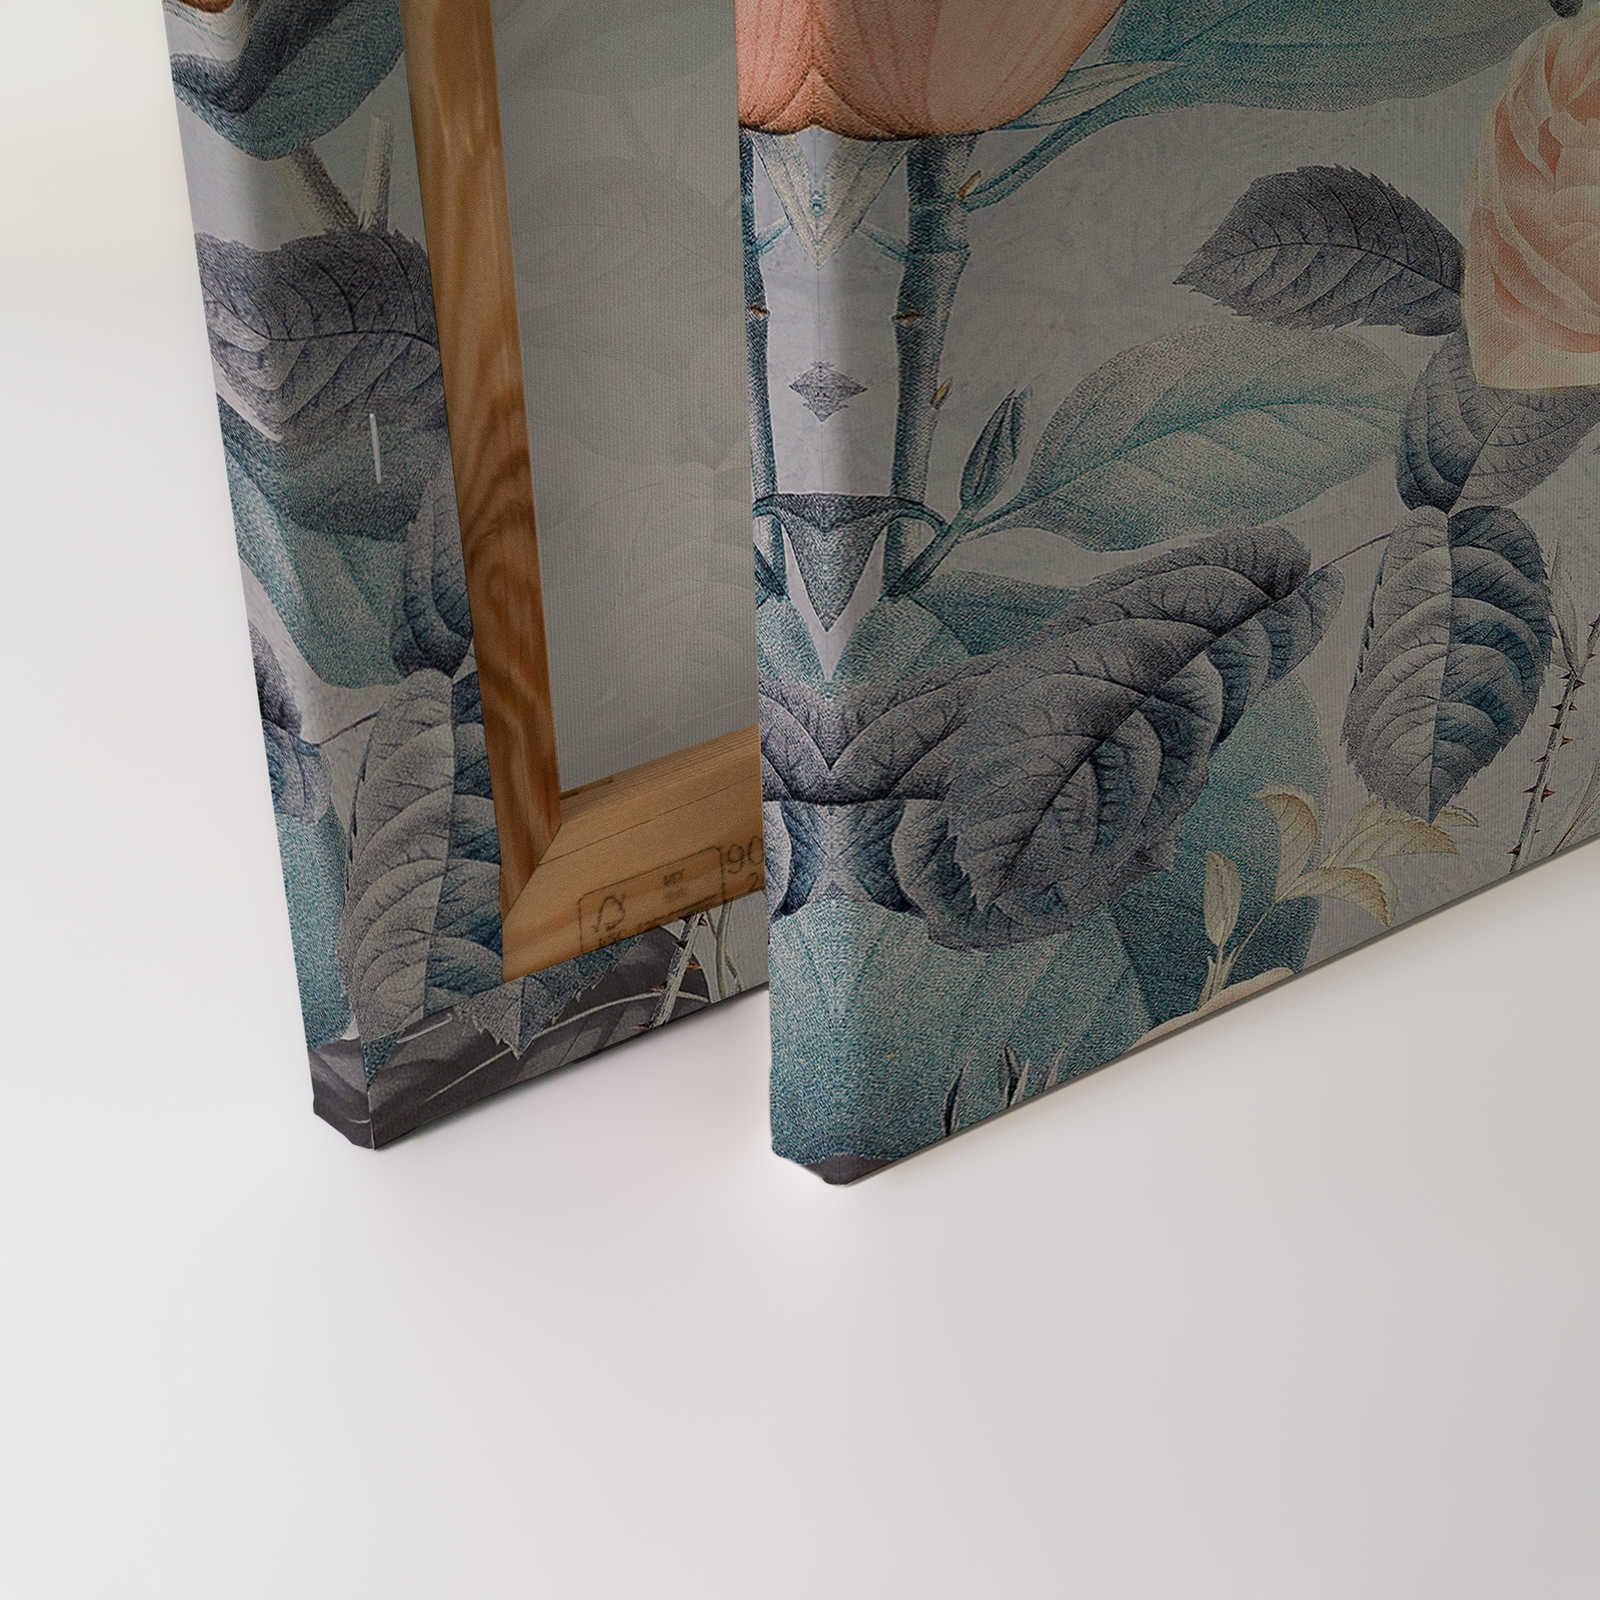             Tableau sur toile Perroquets Rendez-vous avec le design des fleurs - 0,90 m x 0,60 m
        